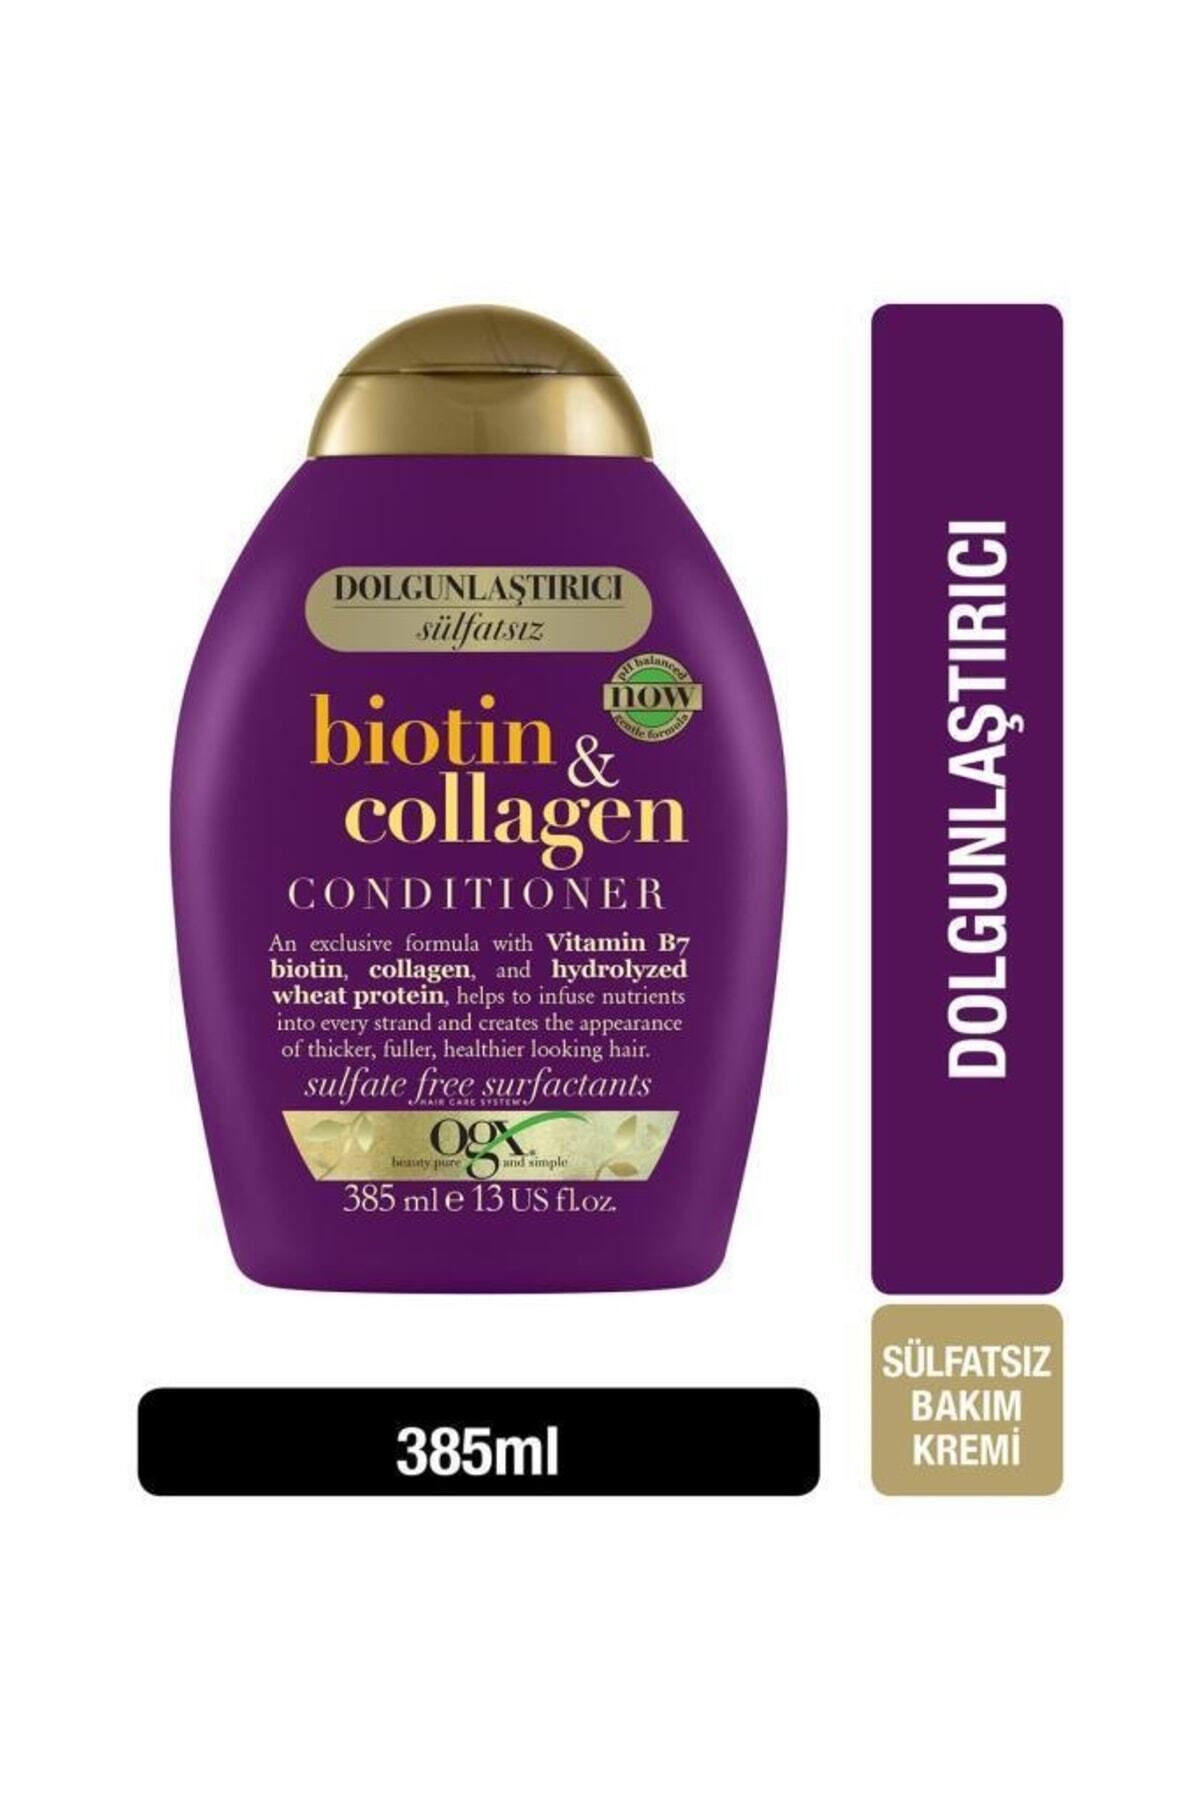 OGX Dolgunlaştırıcı Biotin & Collagen Saç Bakım Kremi 385 ml